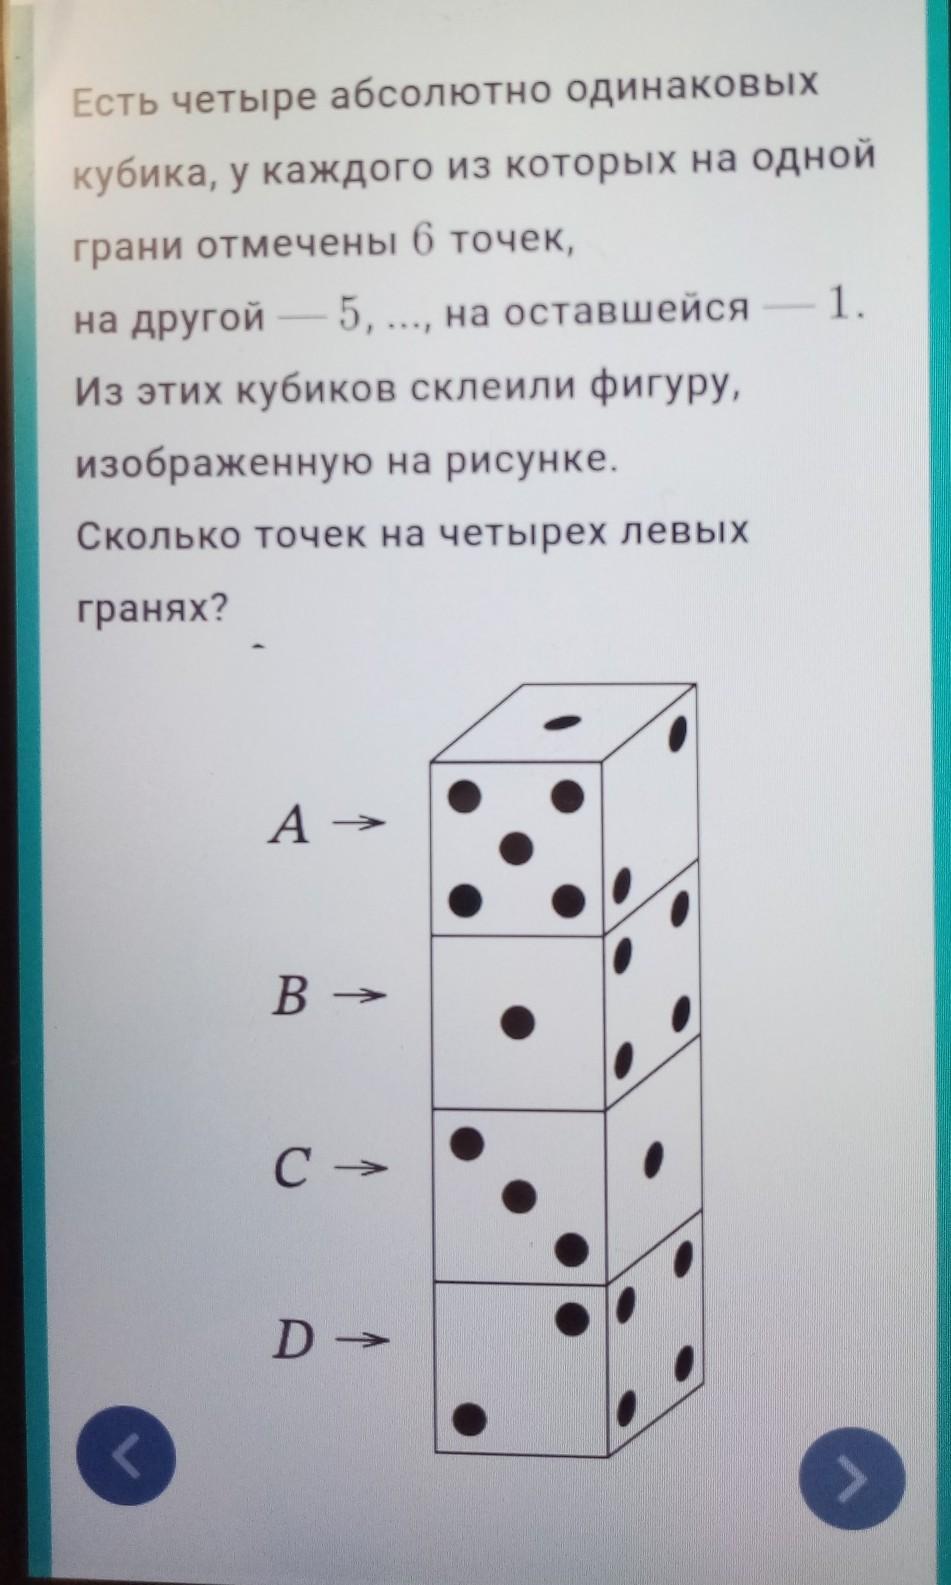 Грани кубика с точками. Есть 4 абсолютно одинаковых кубика. Кубик с 6 точками. Есть четыре абсолютно одинаковых кубика у каждого из которых. На столе лежат три абсолютно одинаковых кубика